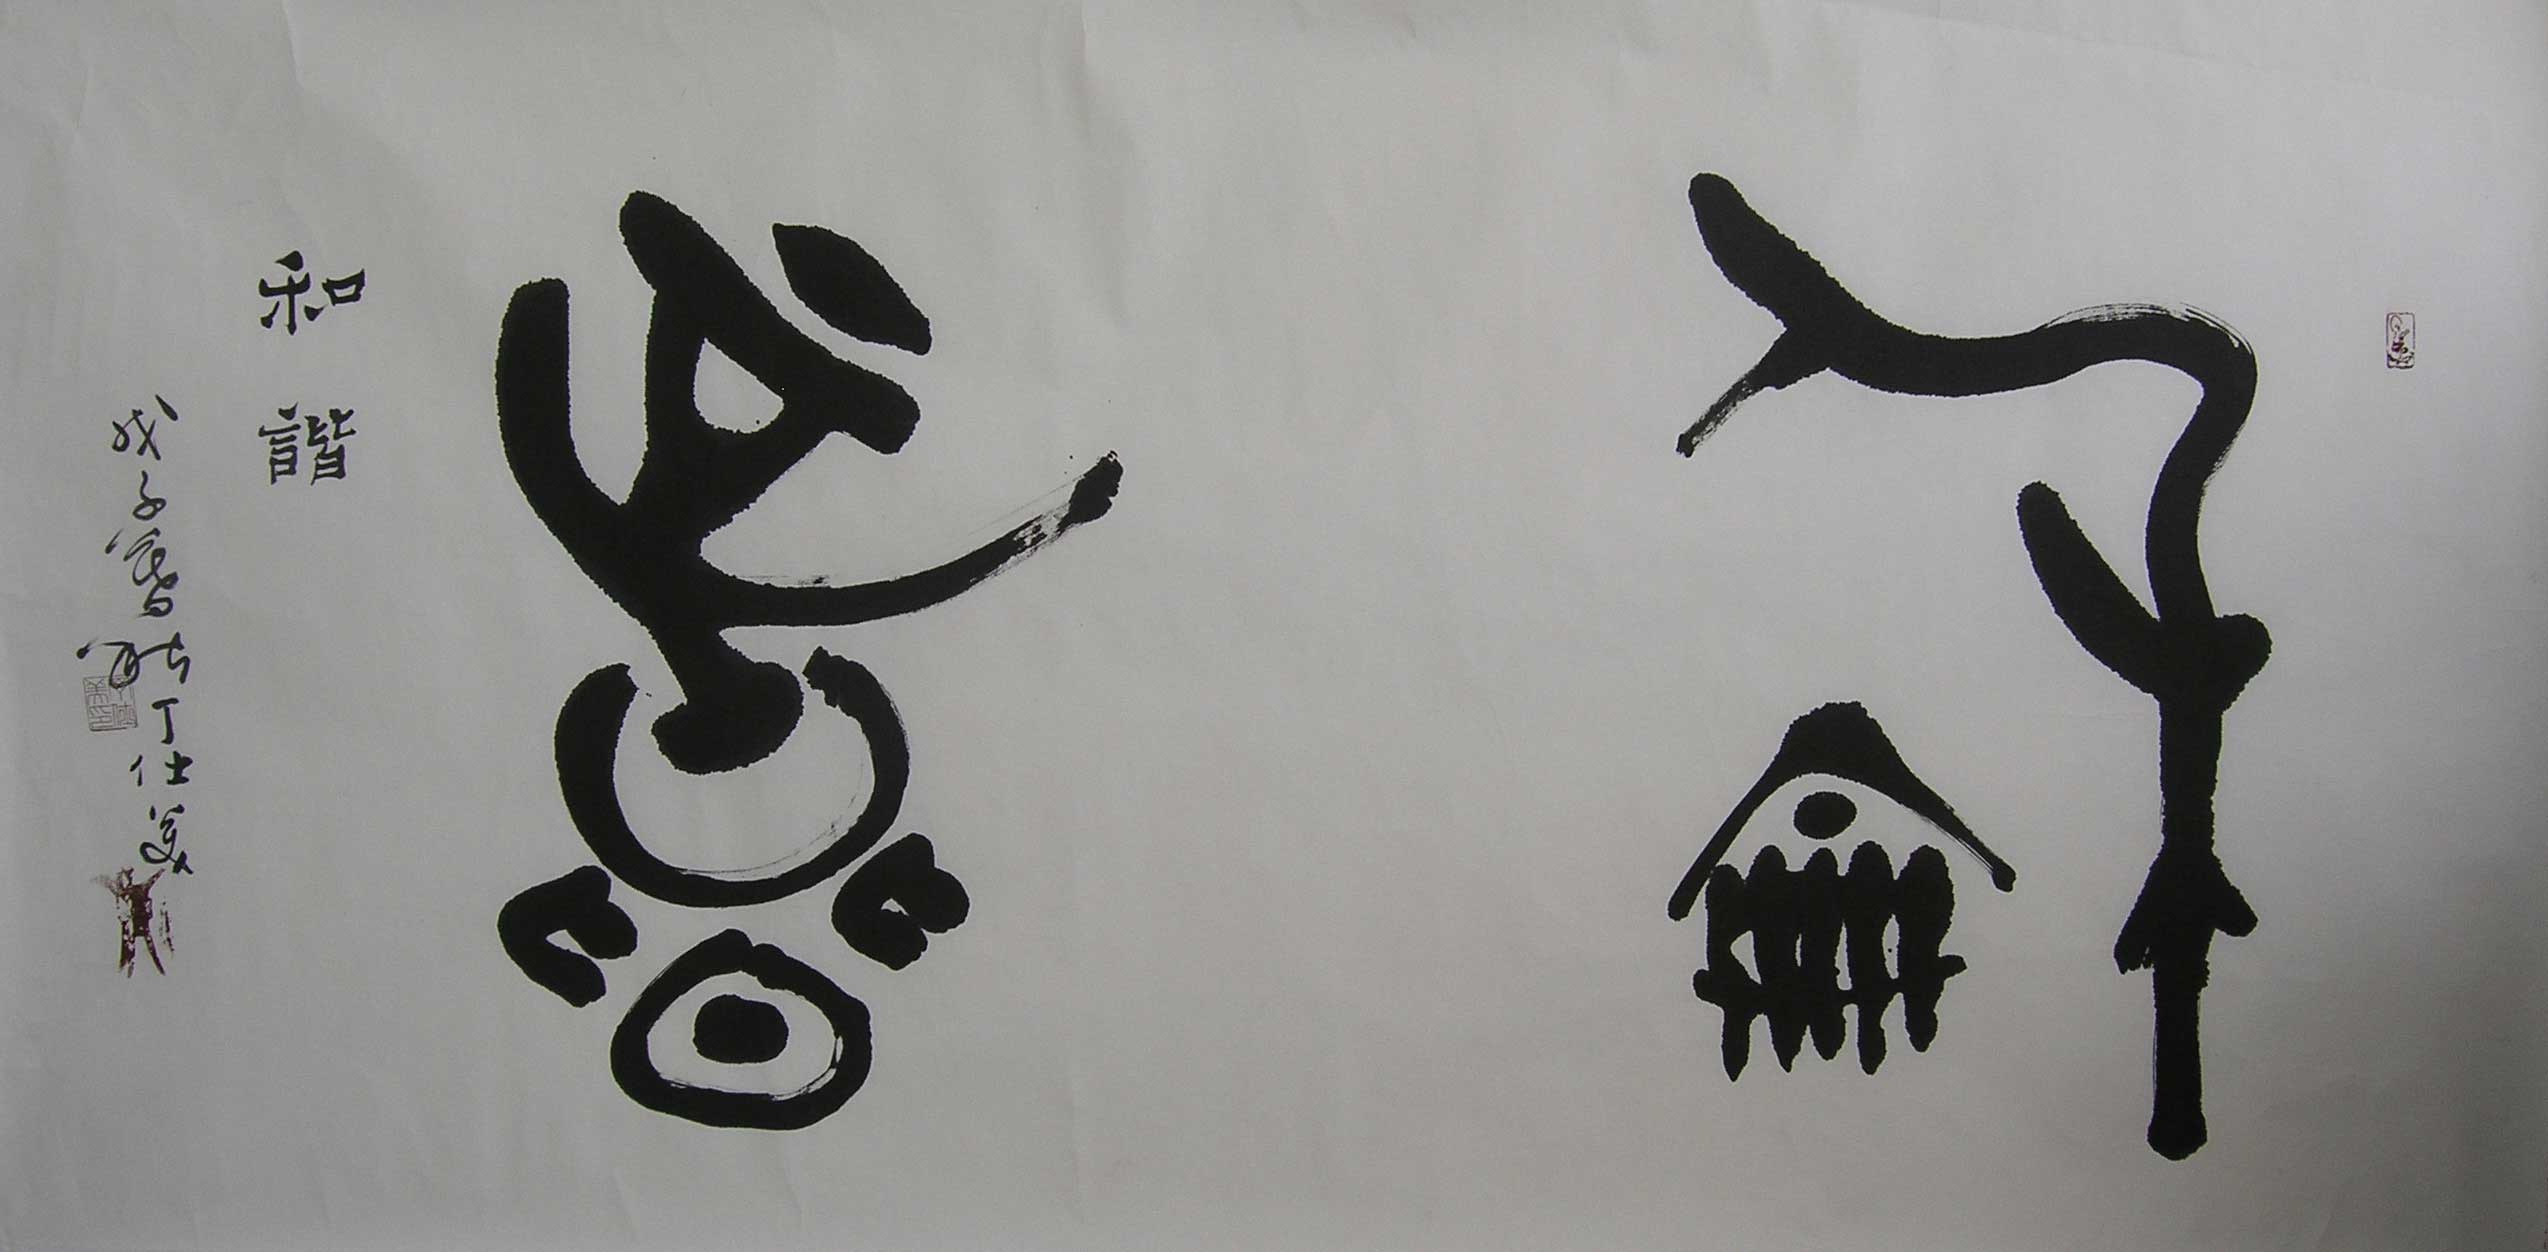 丁仕美大篆書法橫幅，釋文：“和諧”